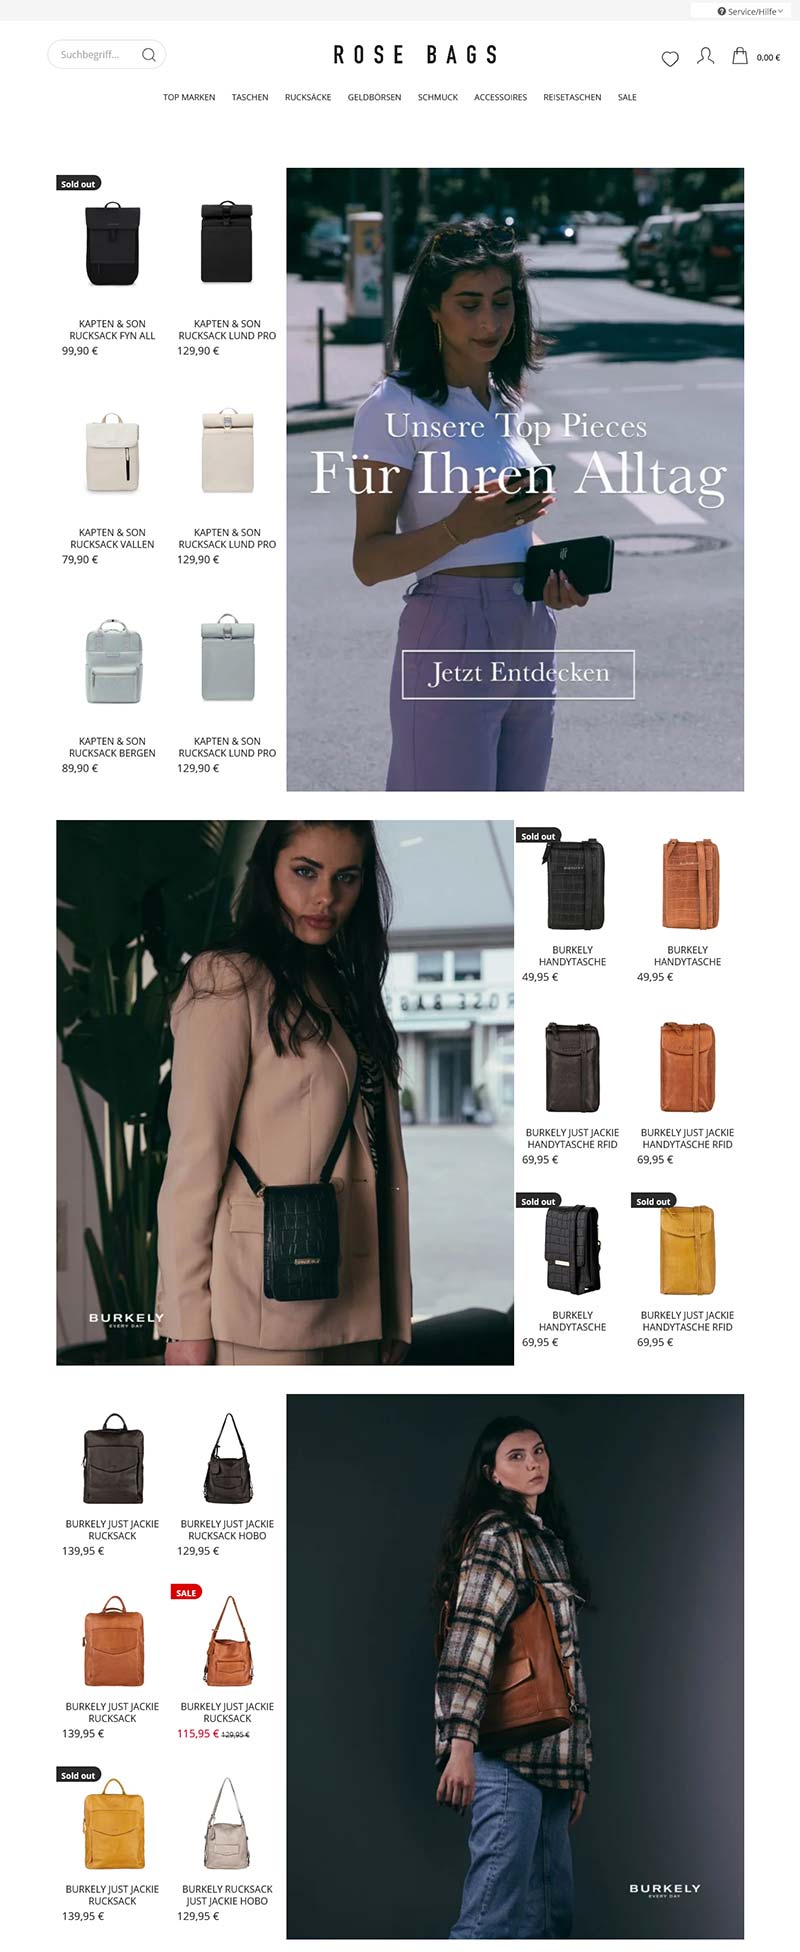 Rose Bags 德国高端手袋品牌海淘网站